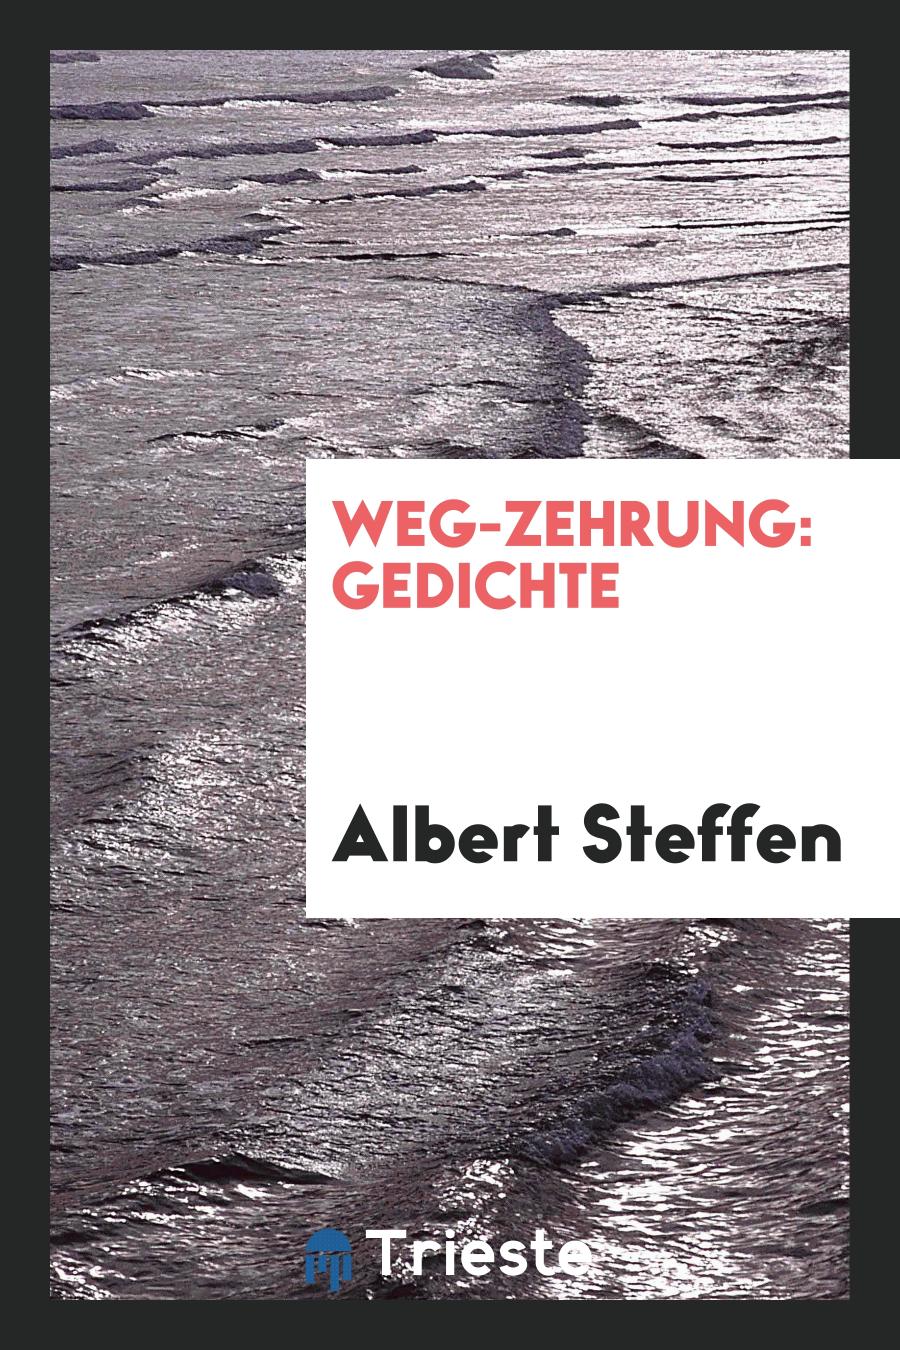 Albert Steffen - Weg-Zehrung: Gedichte